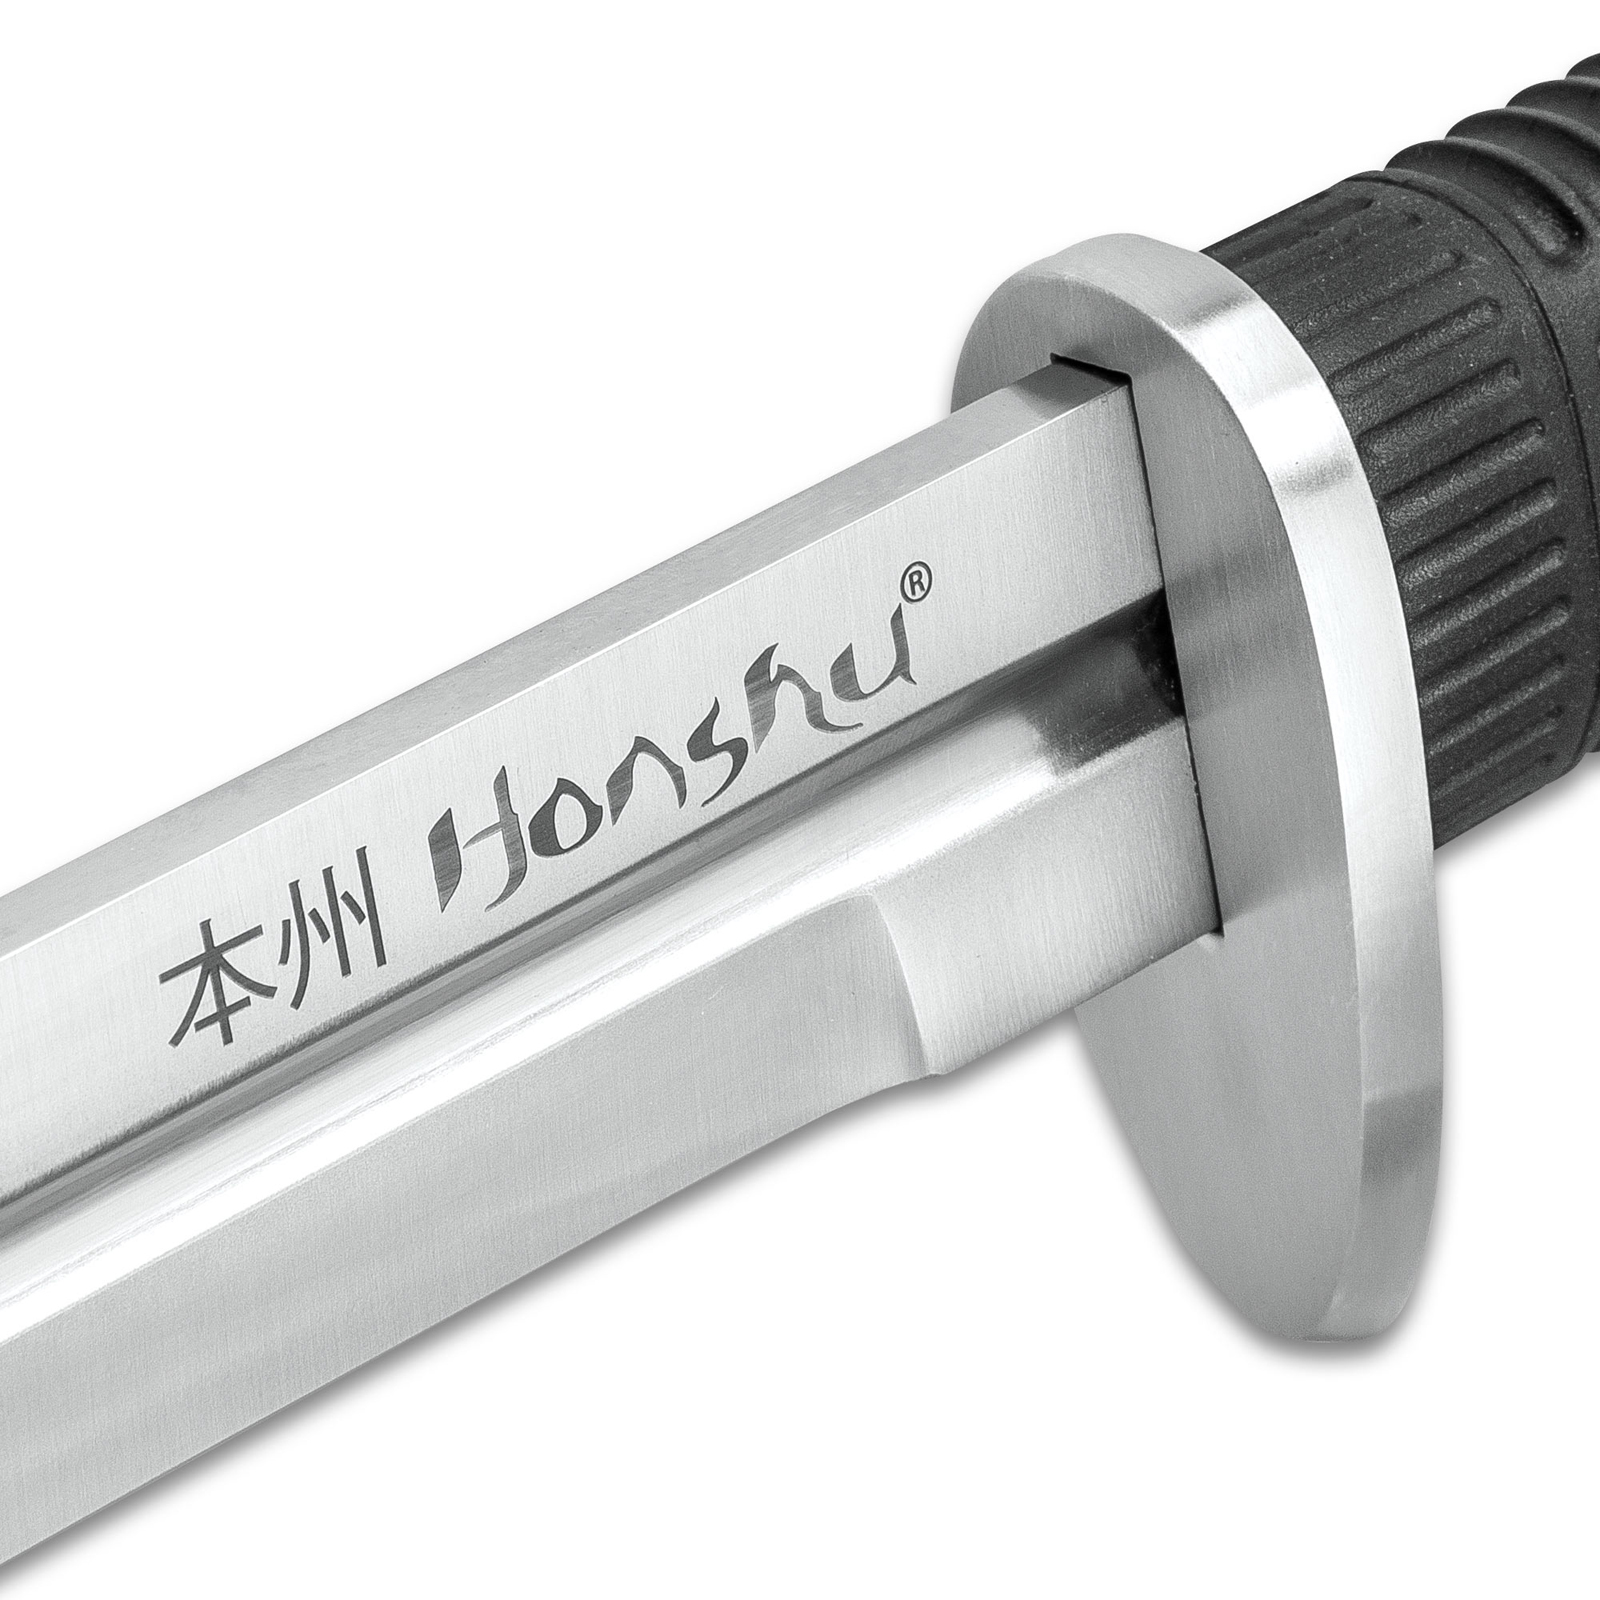 Honshu Boshin Double Edge Sword With Scabbard